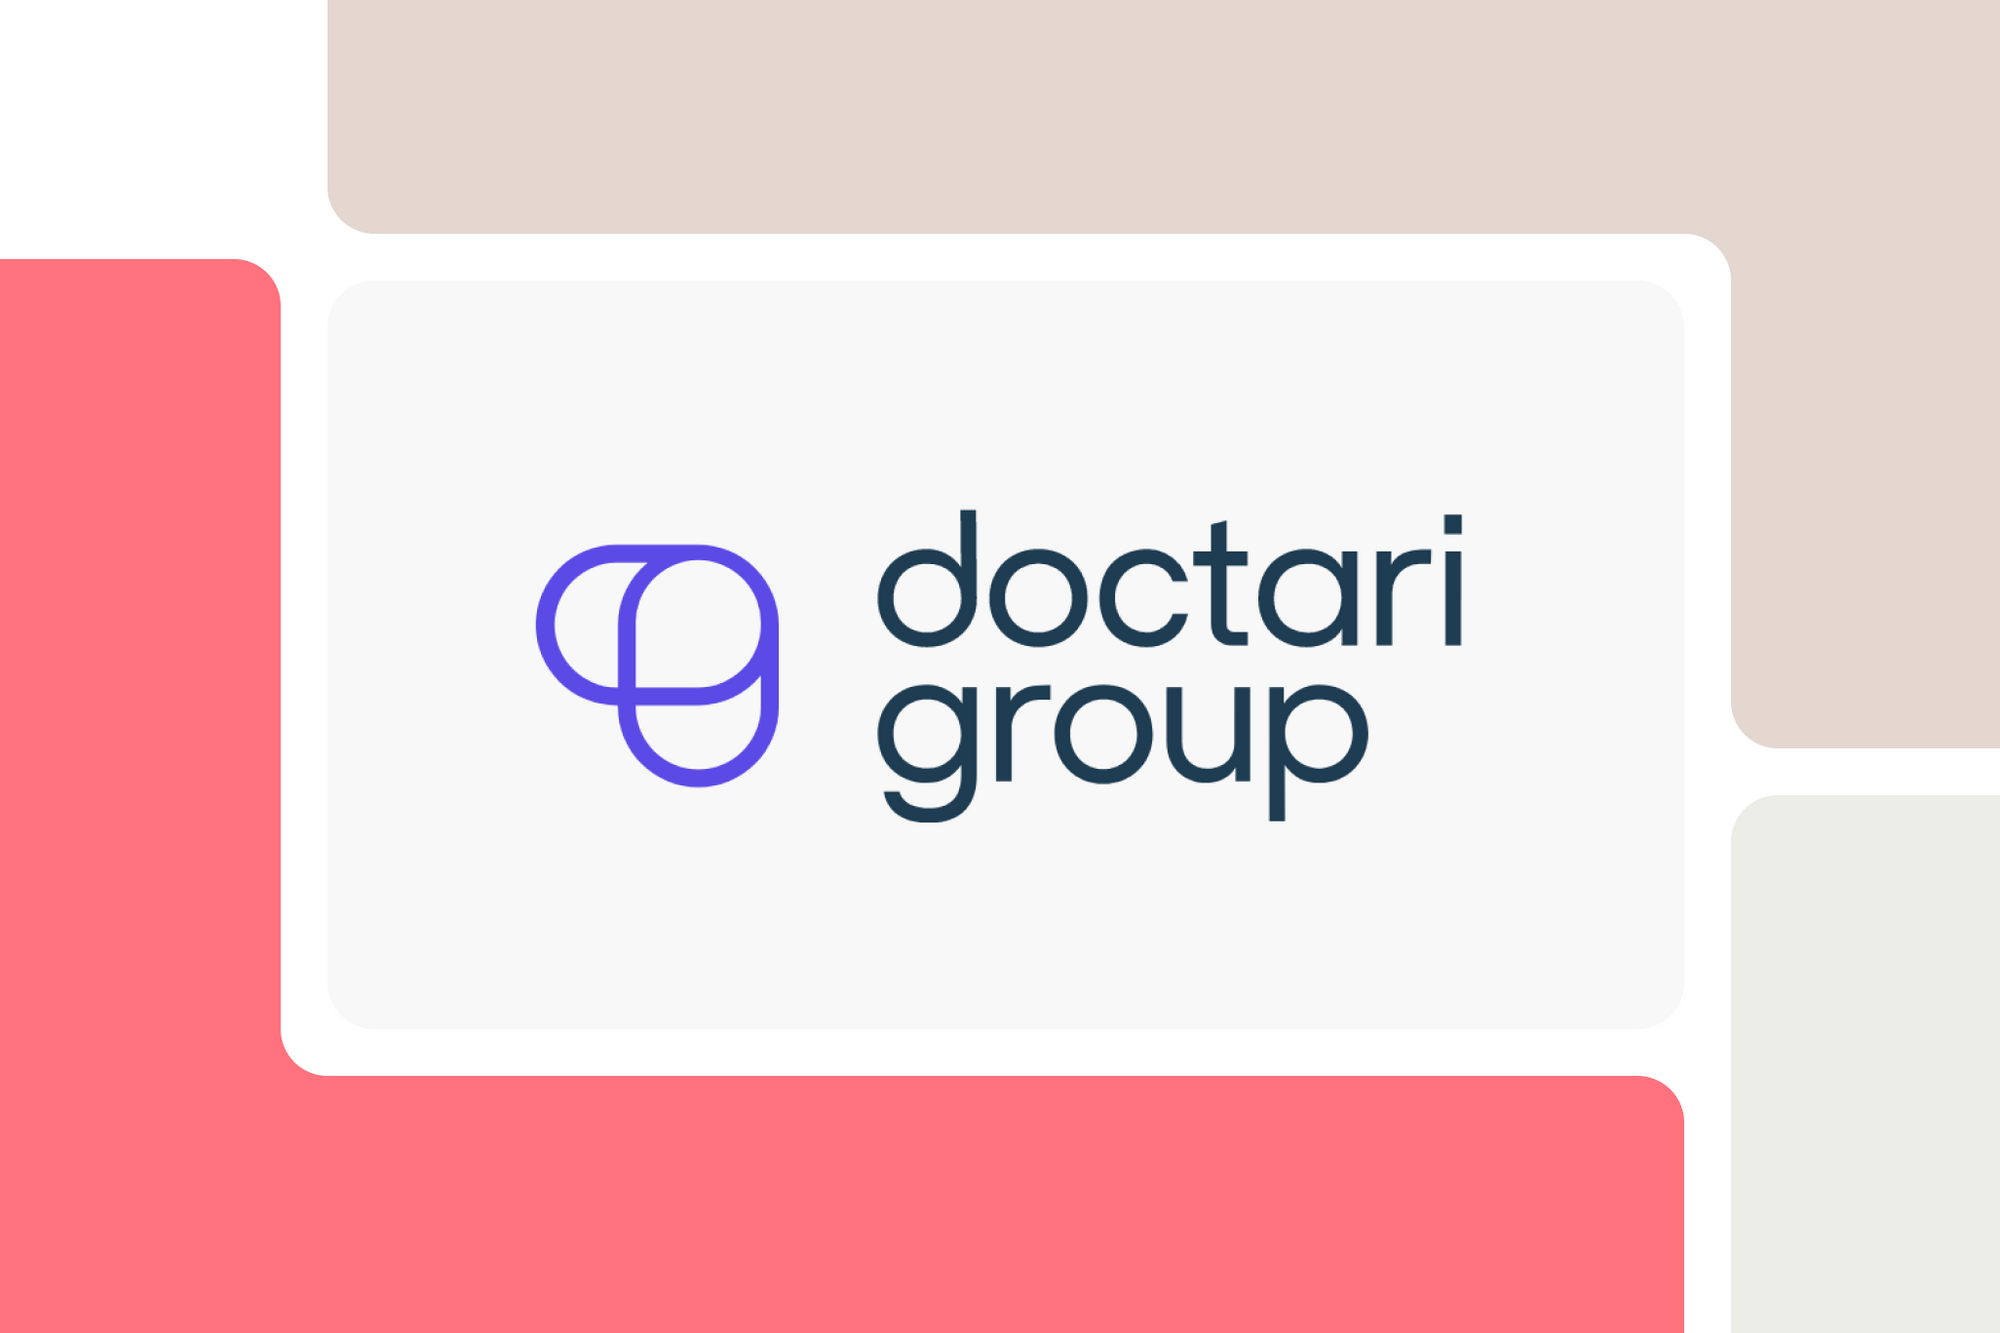 Erfahrungen der doctari group mit der Kreditkartenlösung von Pliant.